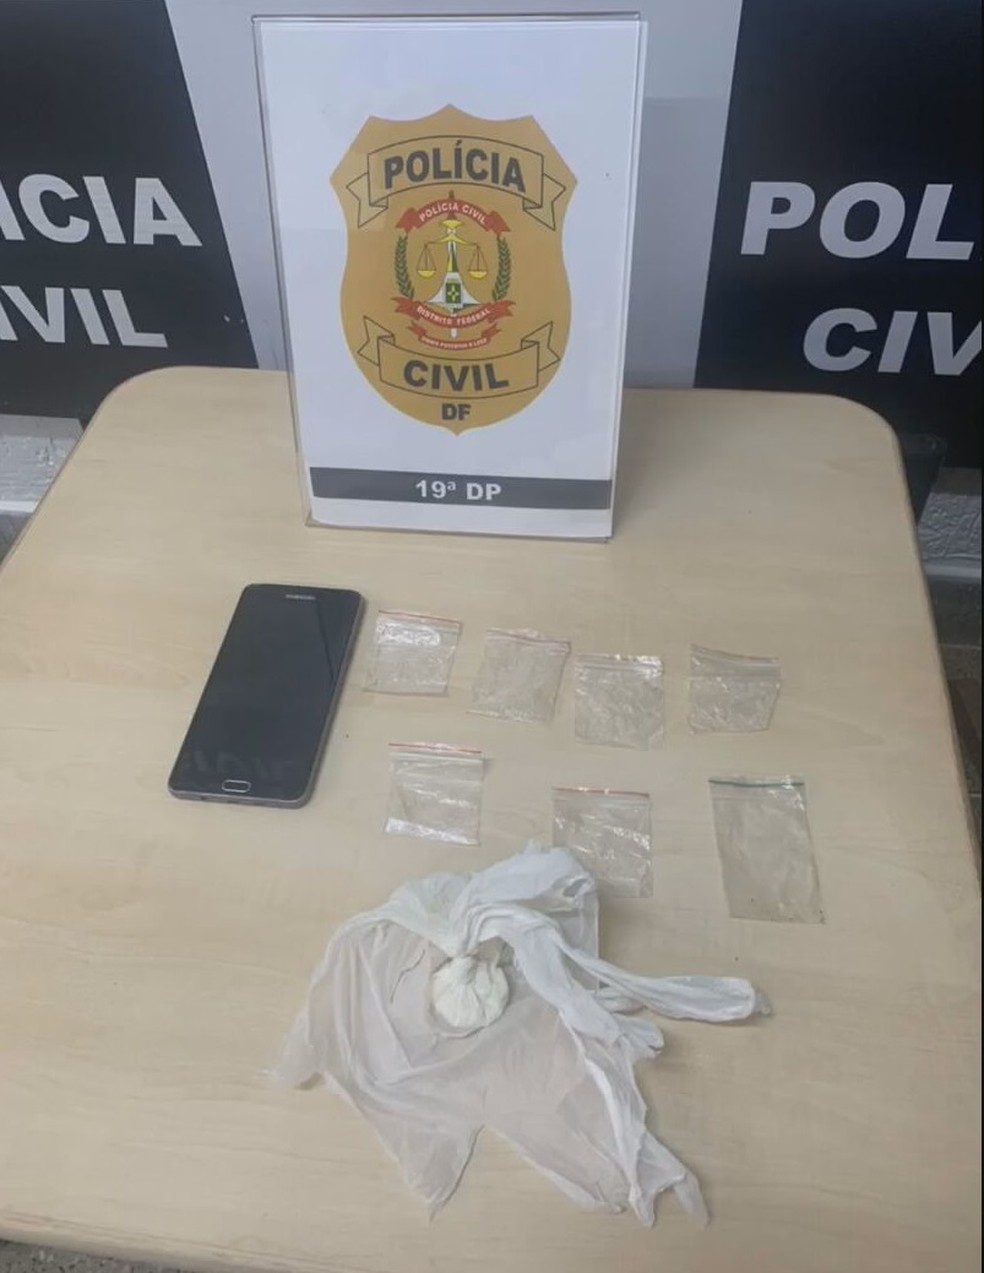 Polícia Civil encontra cocaína na casa de militar do Exército suspeito de participar de homicídio no Sol Nascente, no DF  — Foto: PCDF/Divulgação 